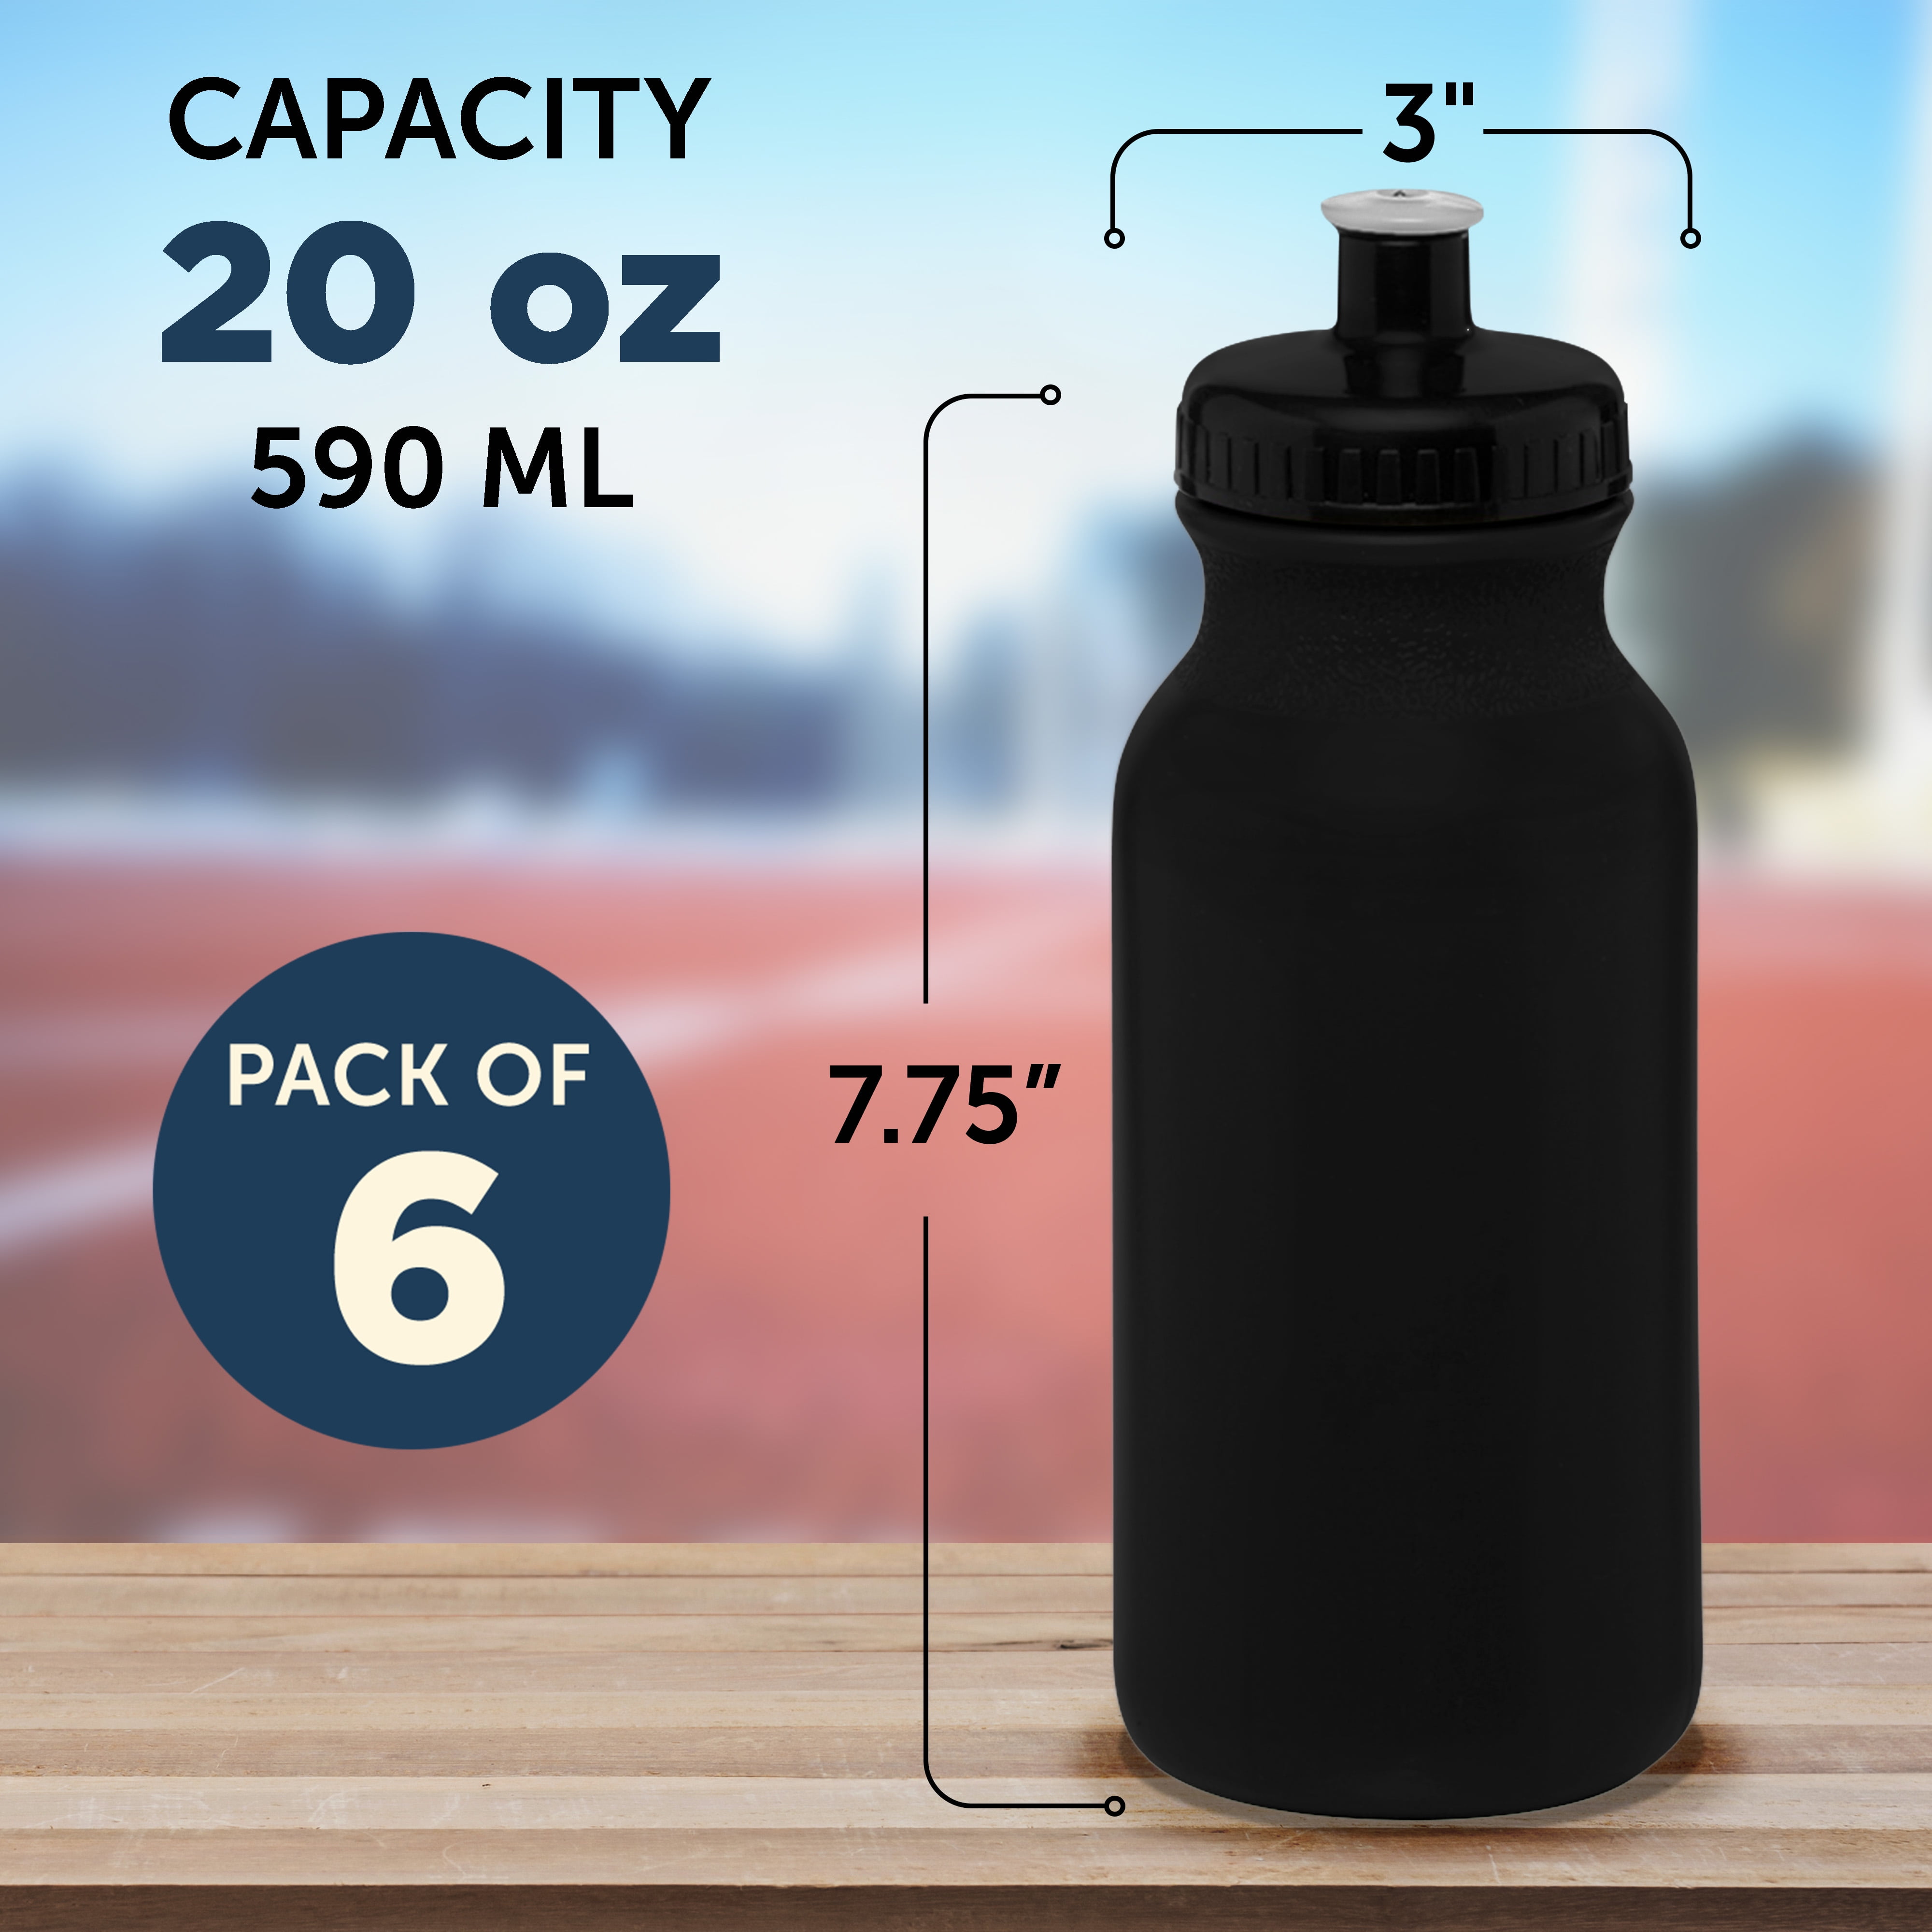 20 oz. Black Plastic Water Bottles - 50 Pieces